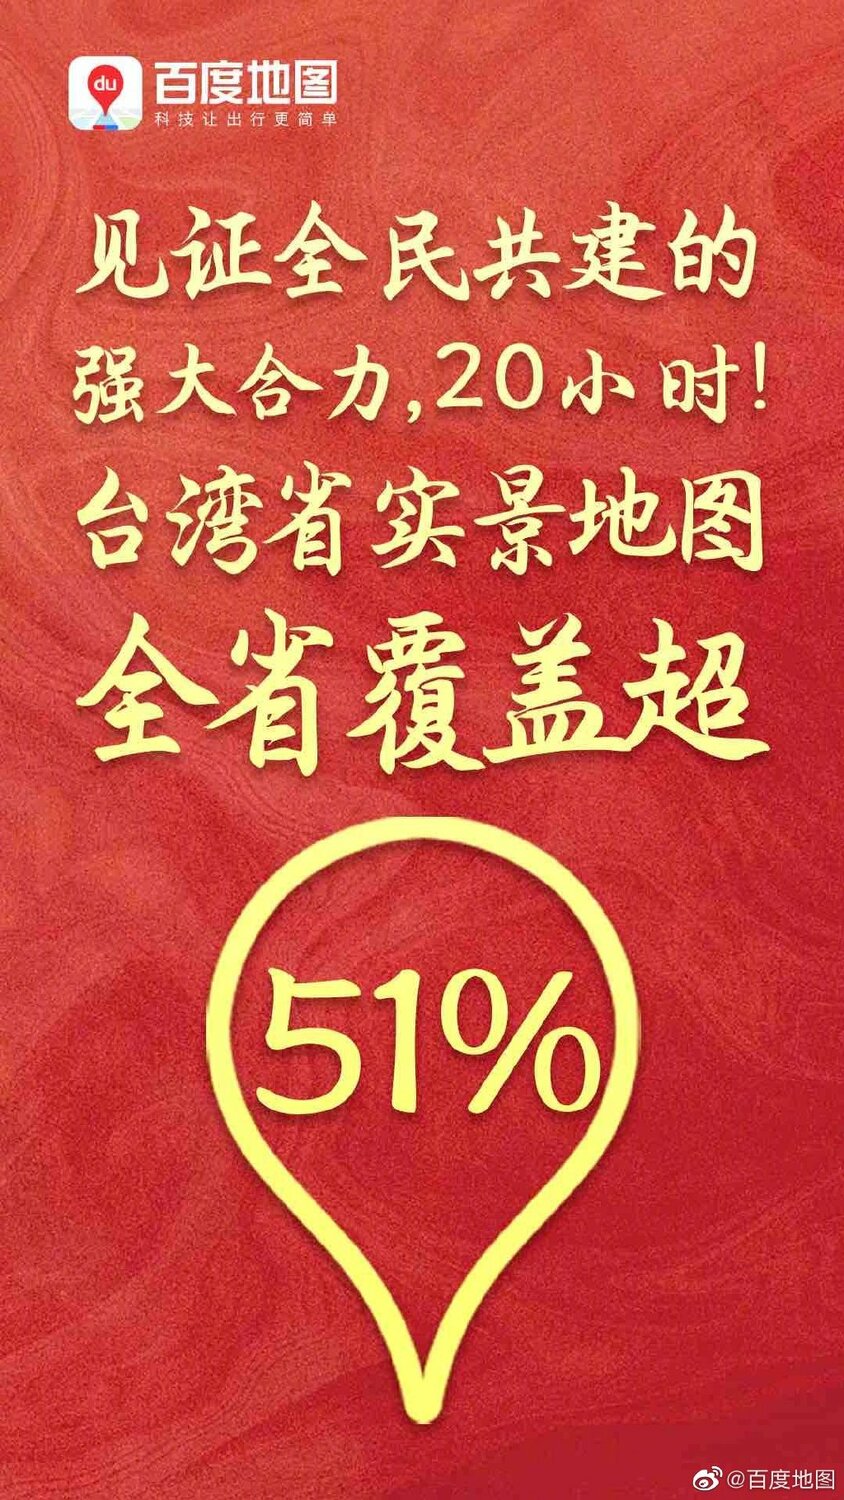 中國發起「共建台灣實景地圖」活動 稱覆蓋率已達51%